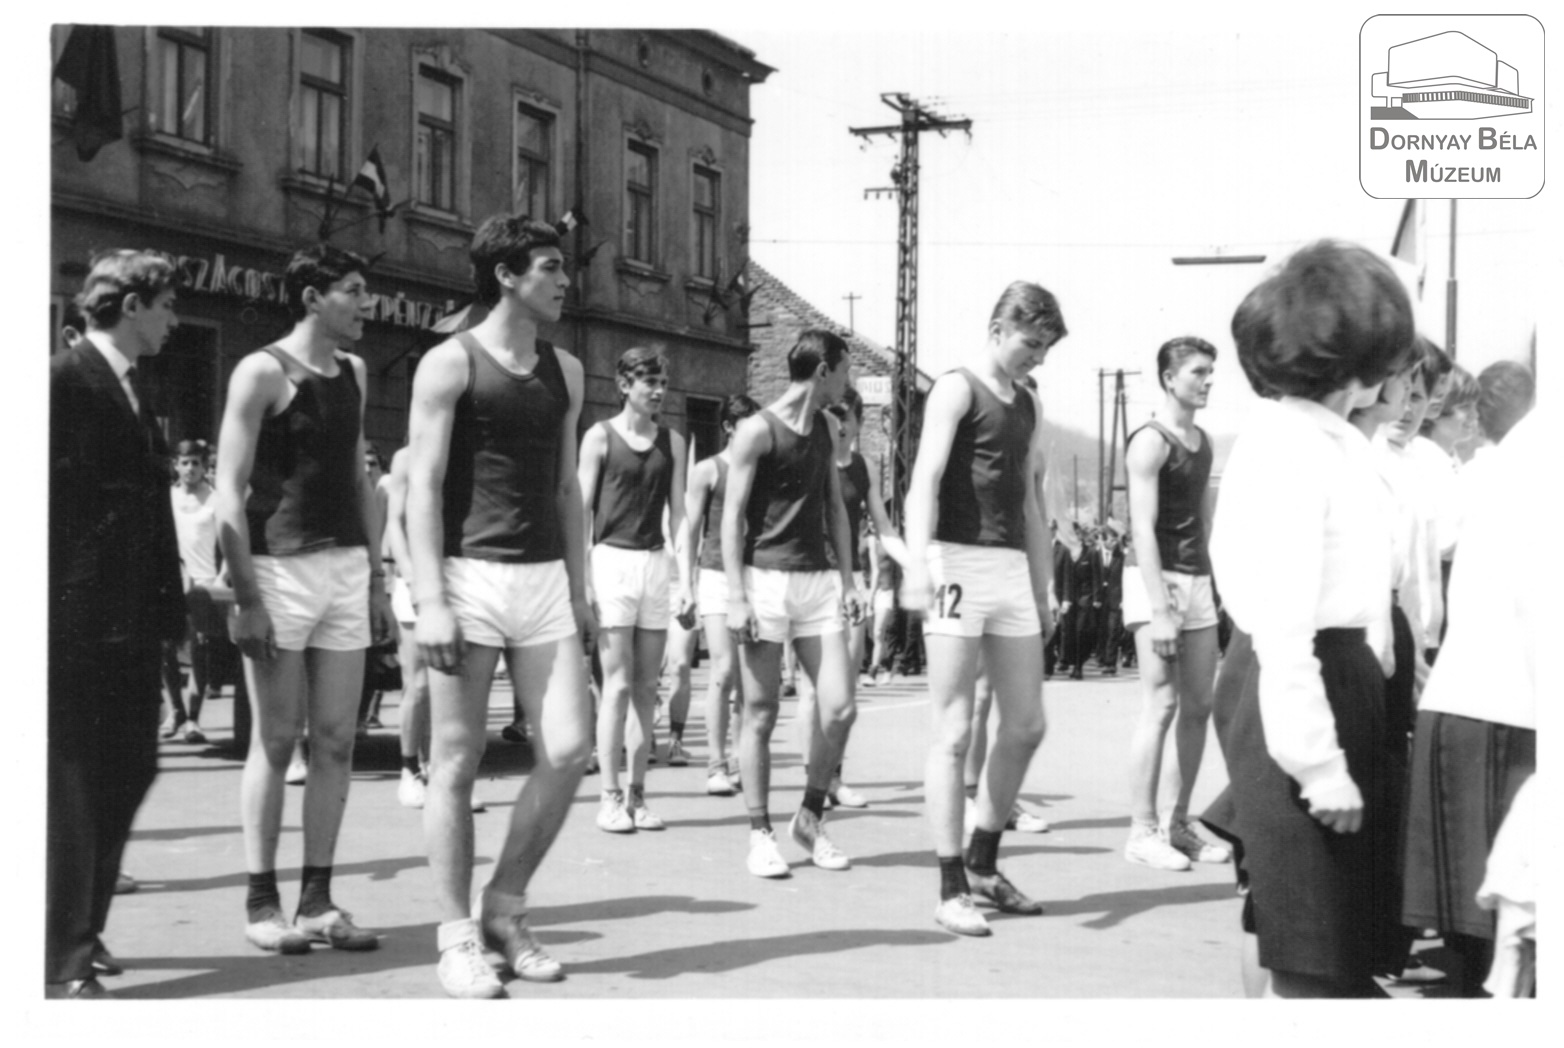 Salgótarjáni május elsejei képek ( sportruhás felvonulók) (Dornyay Béla Múzeum, Salgótarján CC BY-NC-SA)